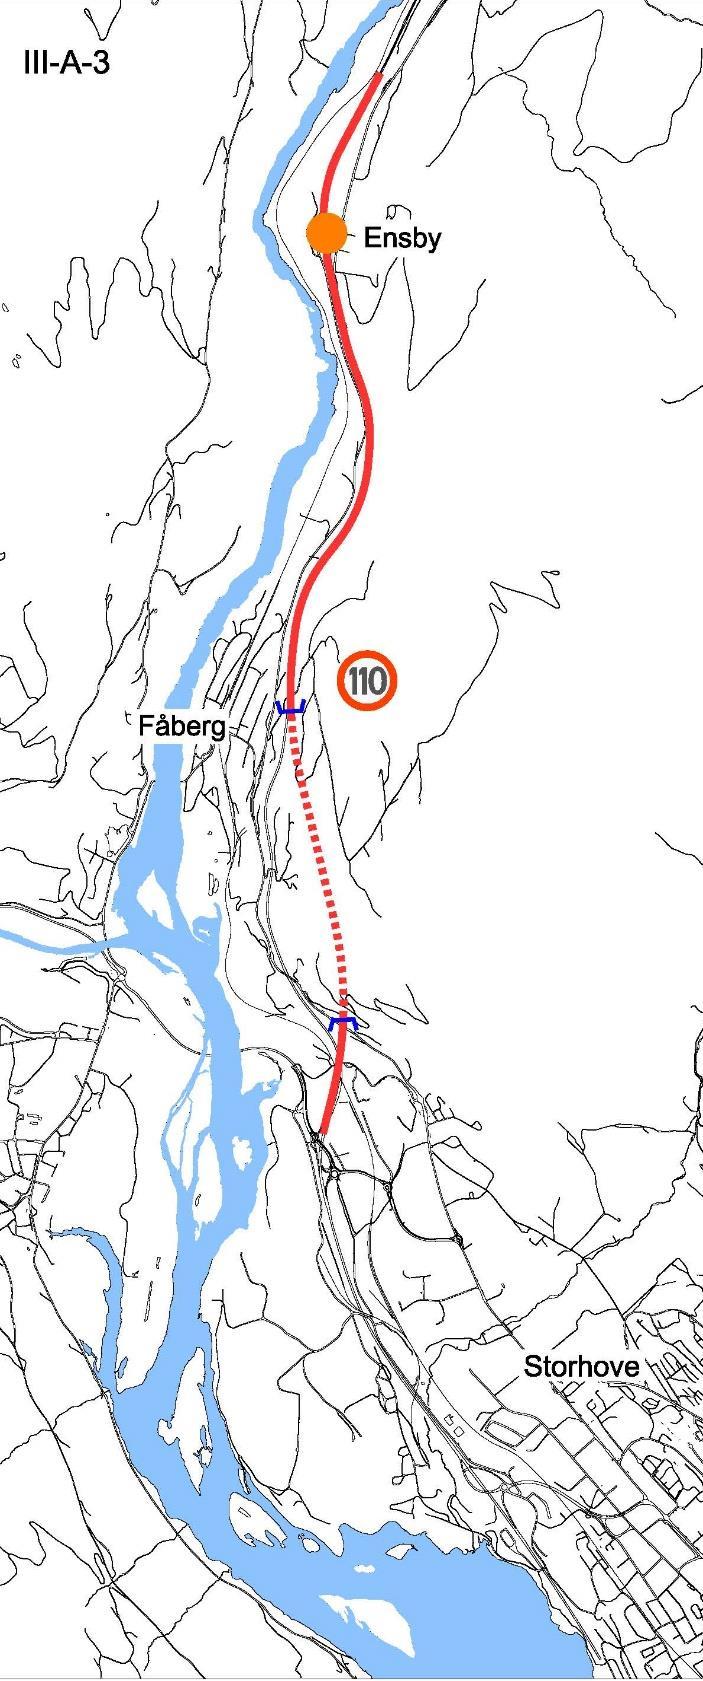 63 5.9 Delstrekning lll, alternativ III-A-3 Alternativ III-A-3 innebærer etablering av tunnel med to løp og lengde ca 1,6 km fra Storhove til Fåberg etter dimensjoneringsklasse H8 og hastighet 110